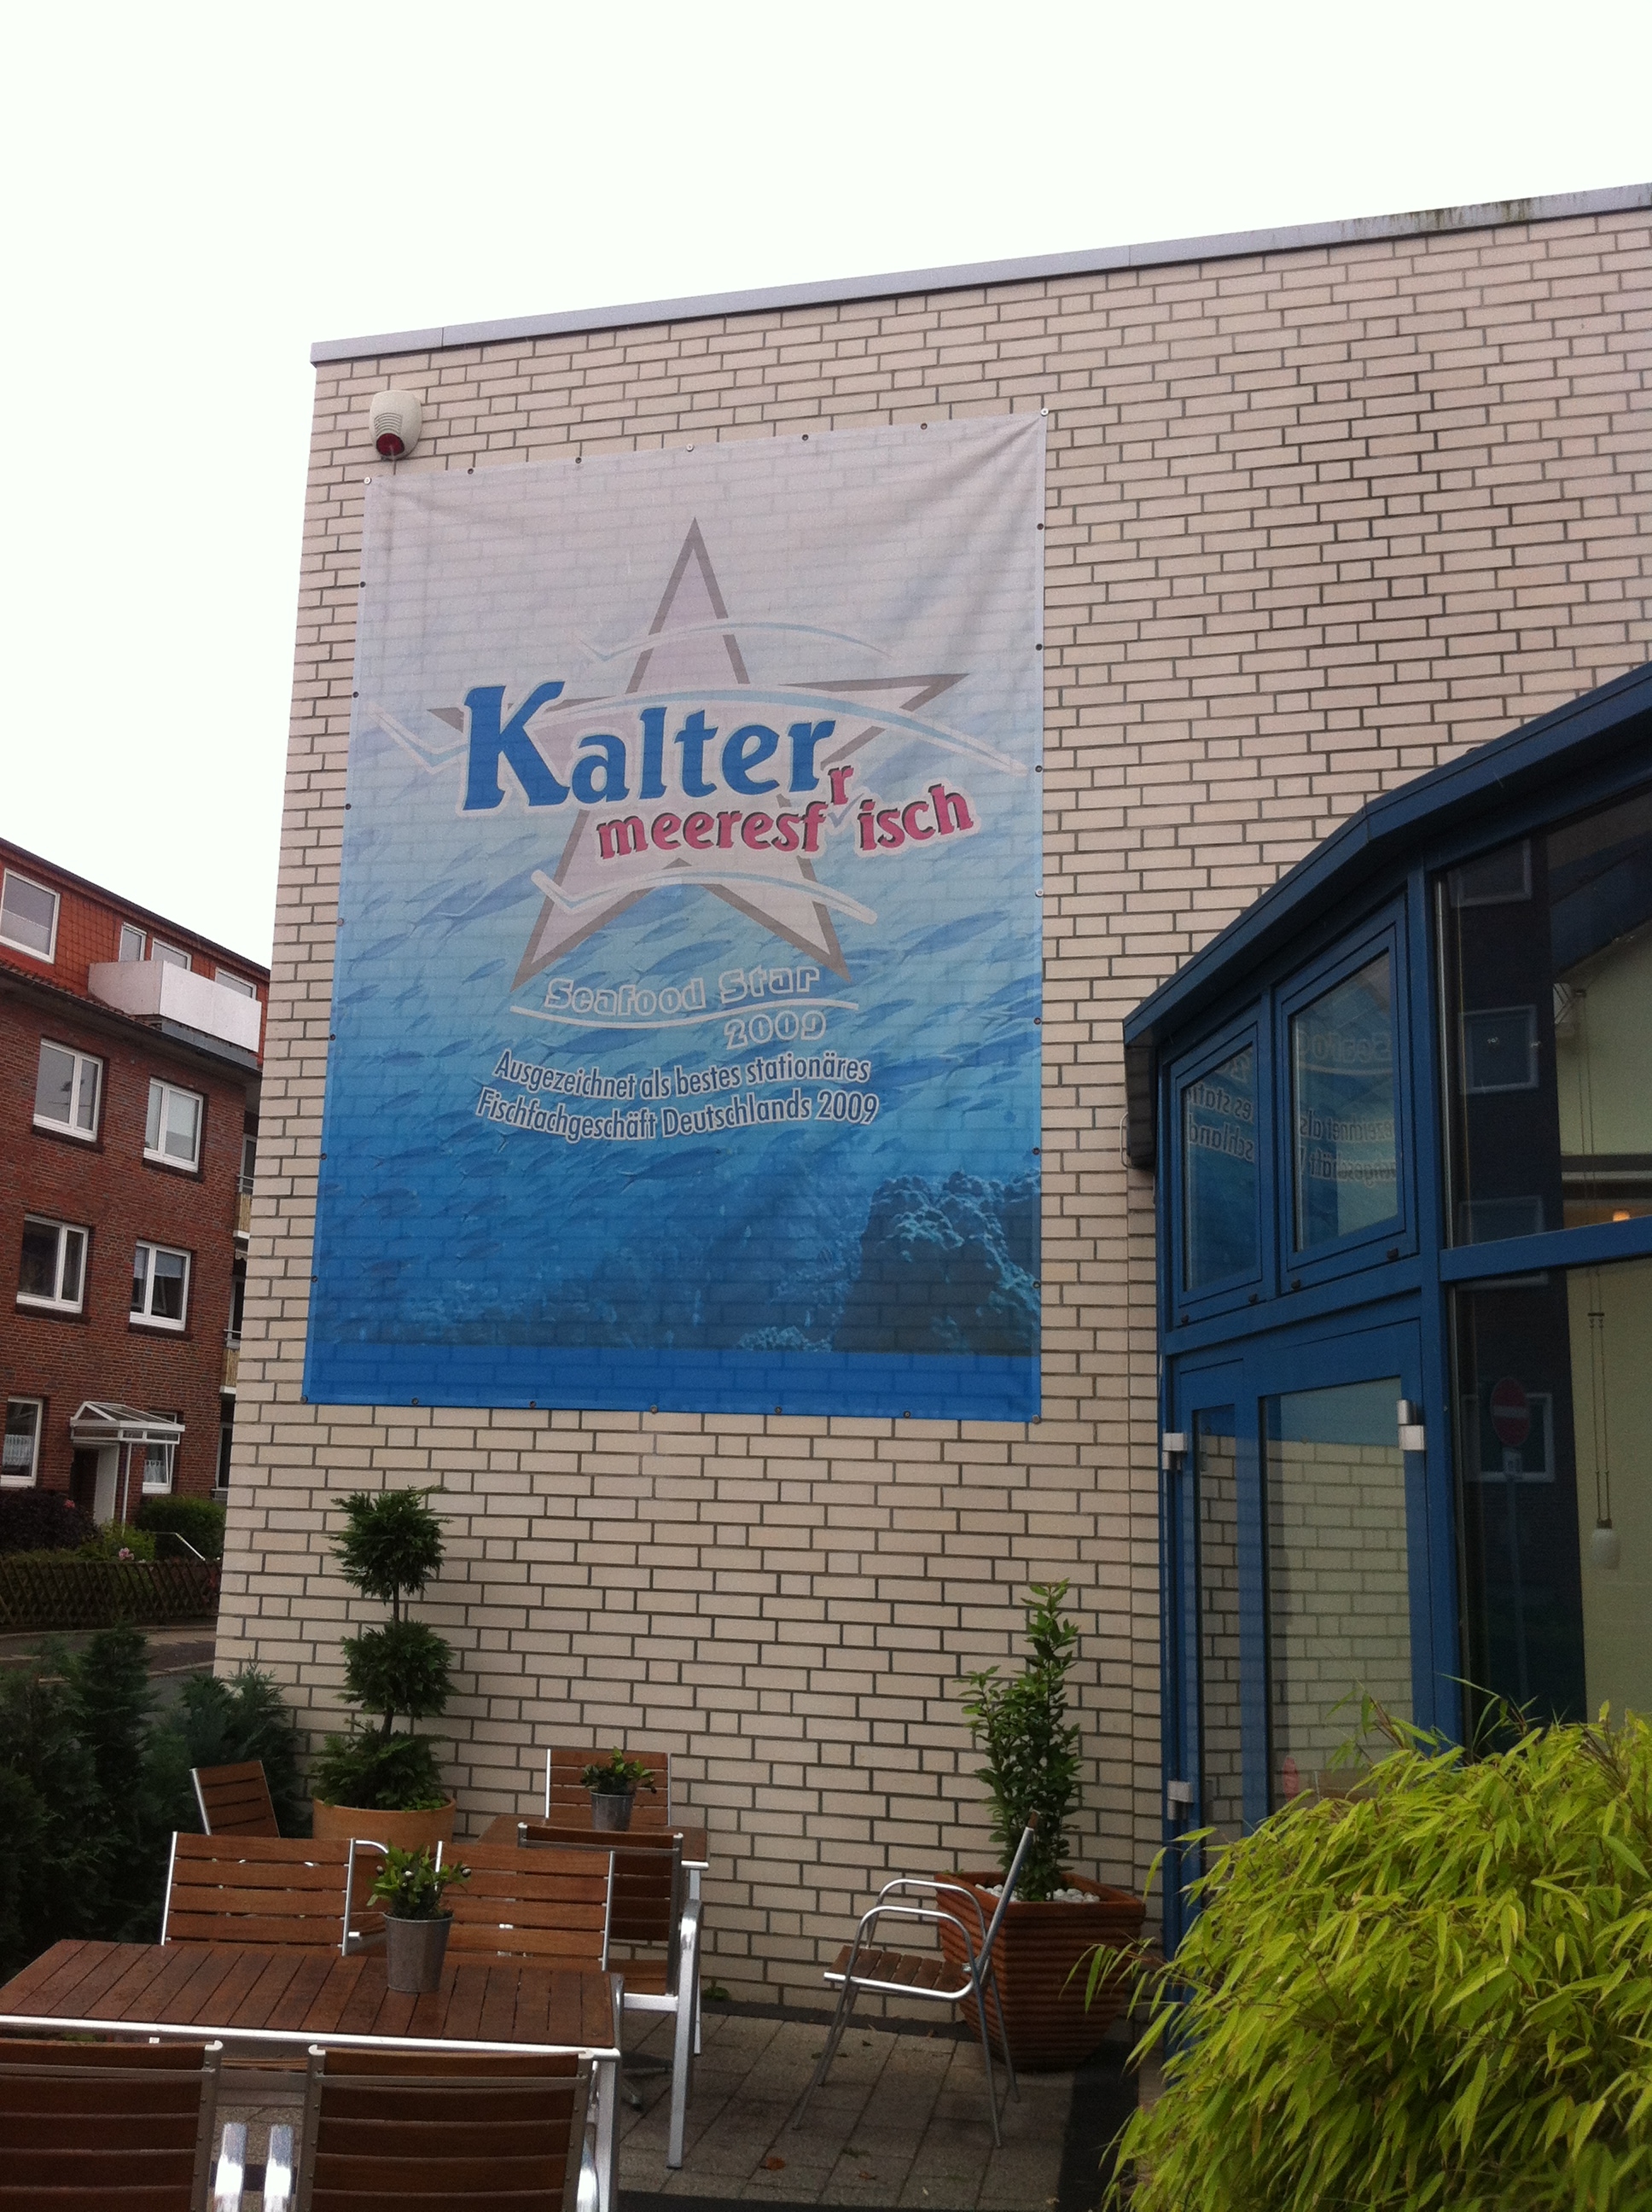 Fischgeschäft Kalter in Wilhelmshaven wurde 2009 als bestes stationäres Fischfachgeschäft ausgezeichnet